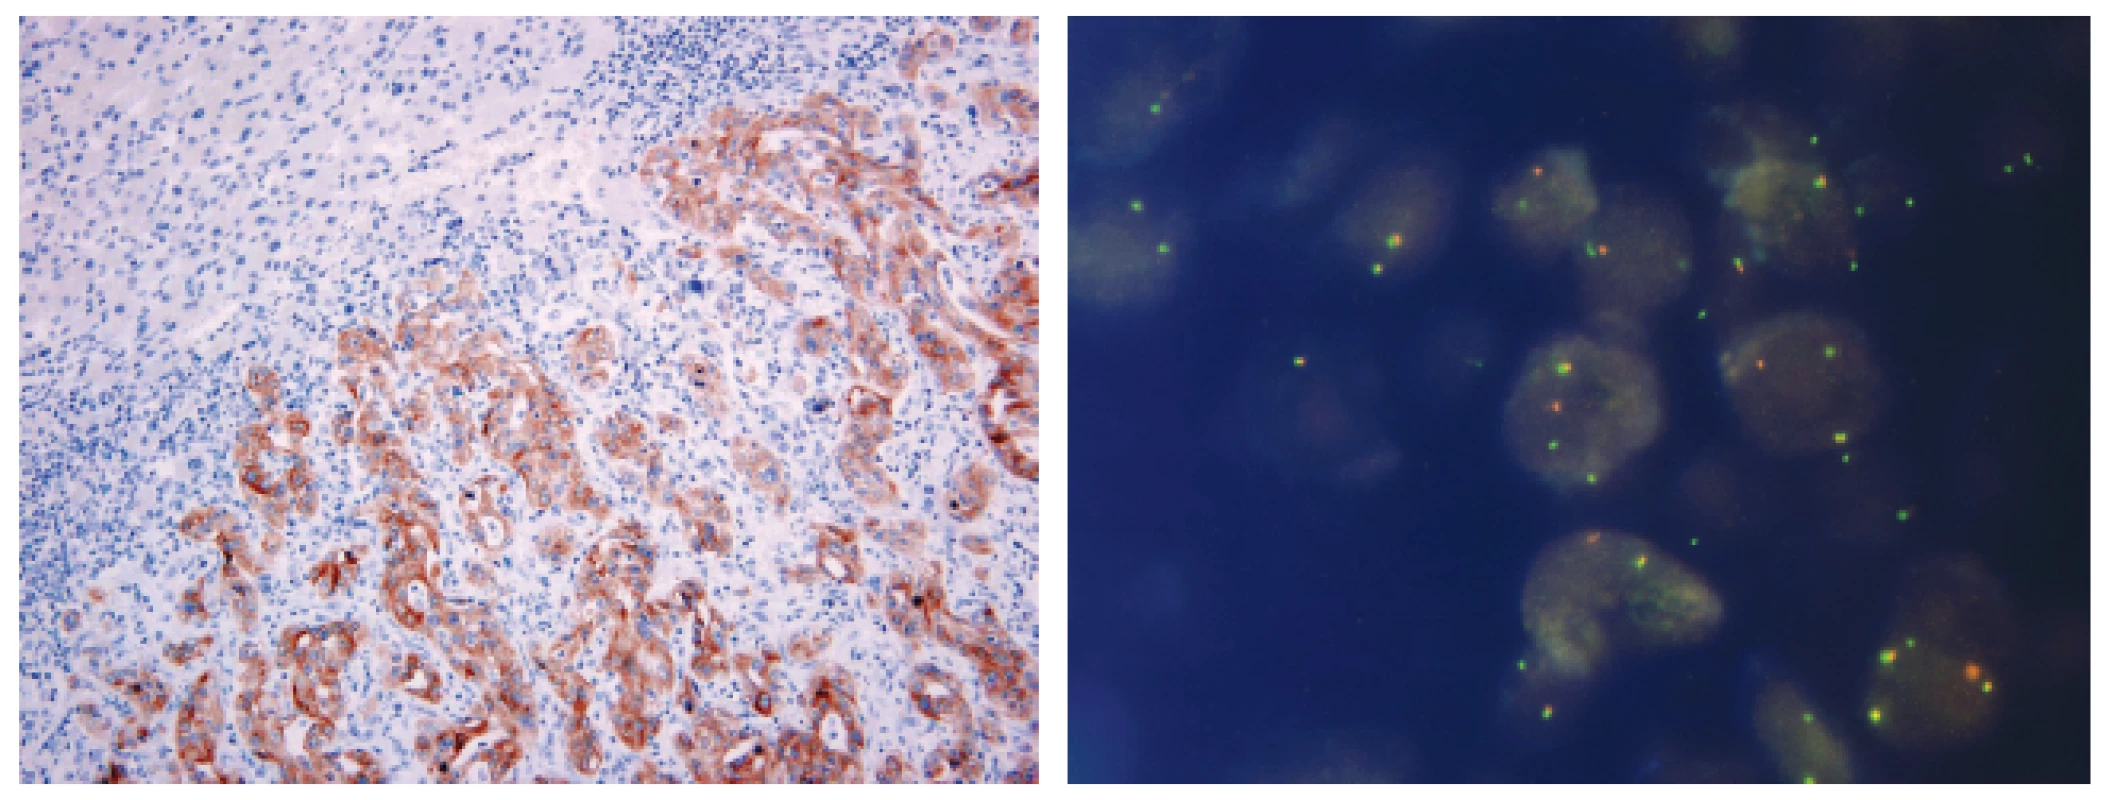 Metastáza plicního adenokarcinomu v jaterním parenchymu s přestavbou ALK pozitivní v imunohistochemickém průkazu pomocí protilátky klonu 5A4 (A) a metodou FISH (B)